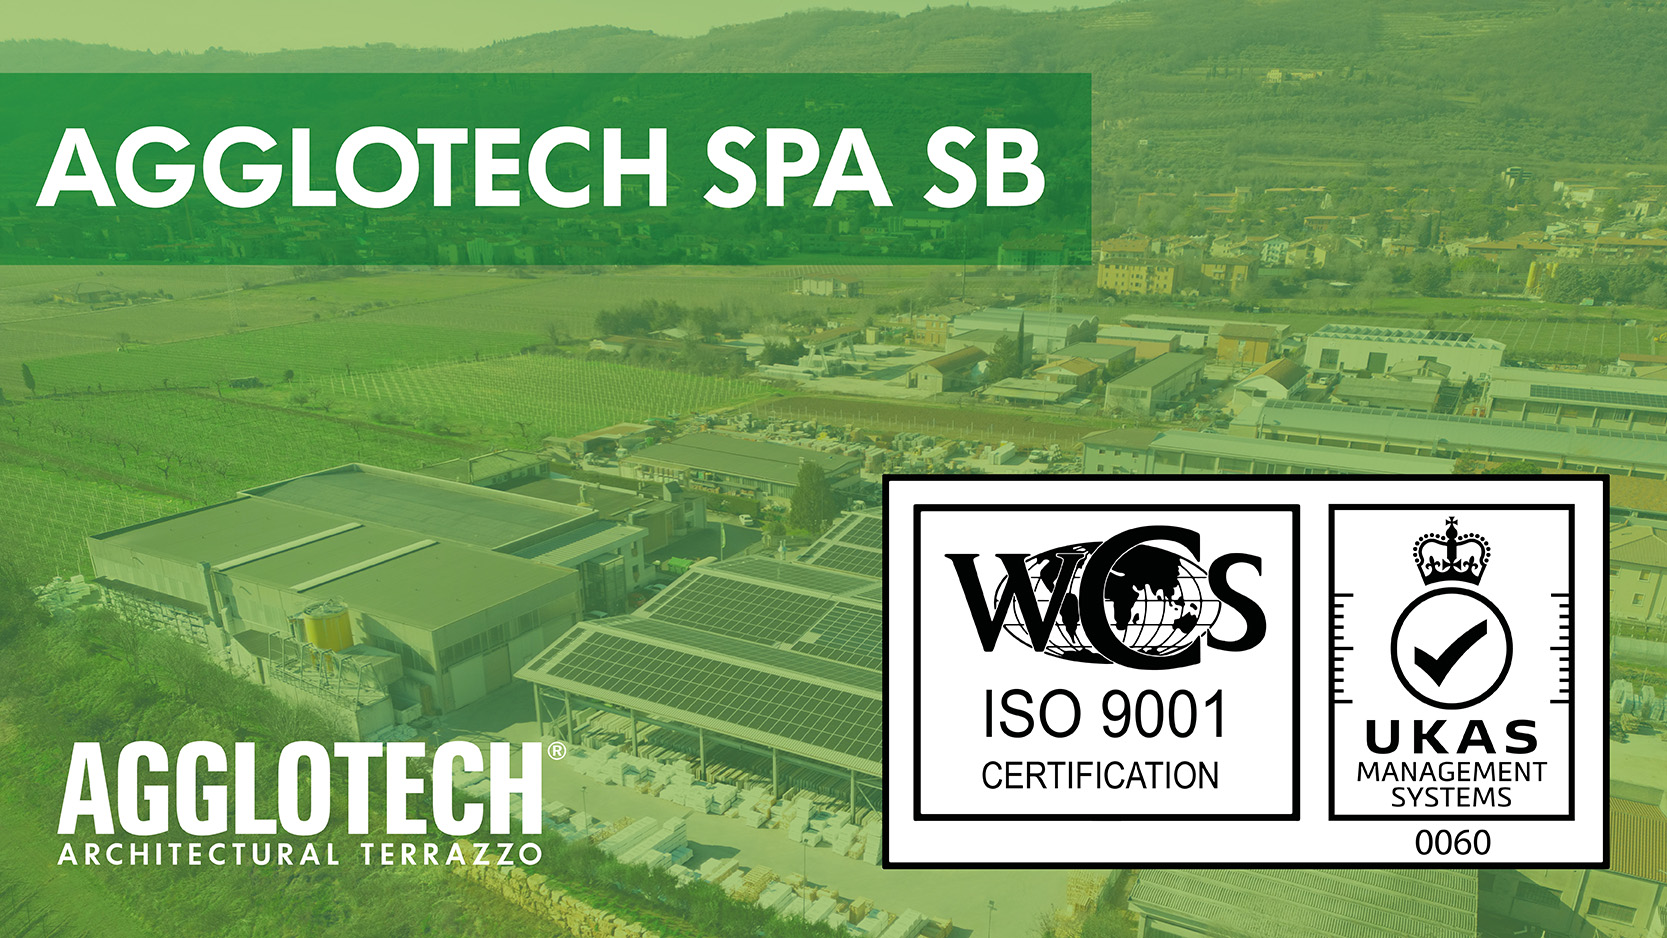 Agglotech SPA SB erhält die ISO 9001:2015 -Zertifizierung